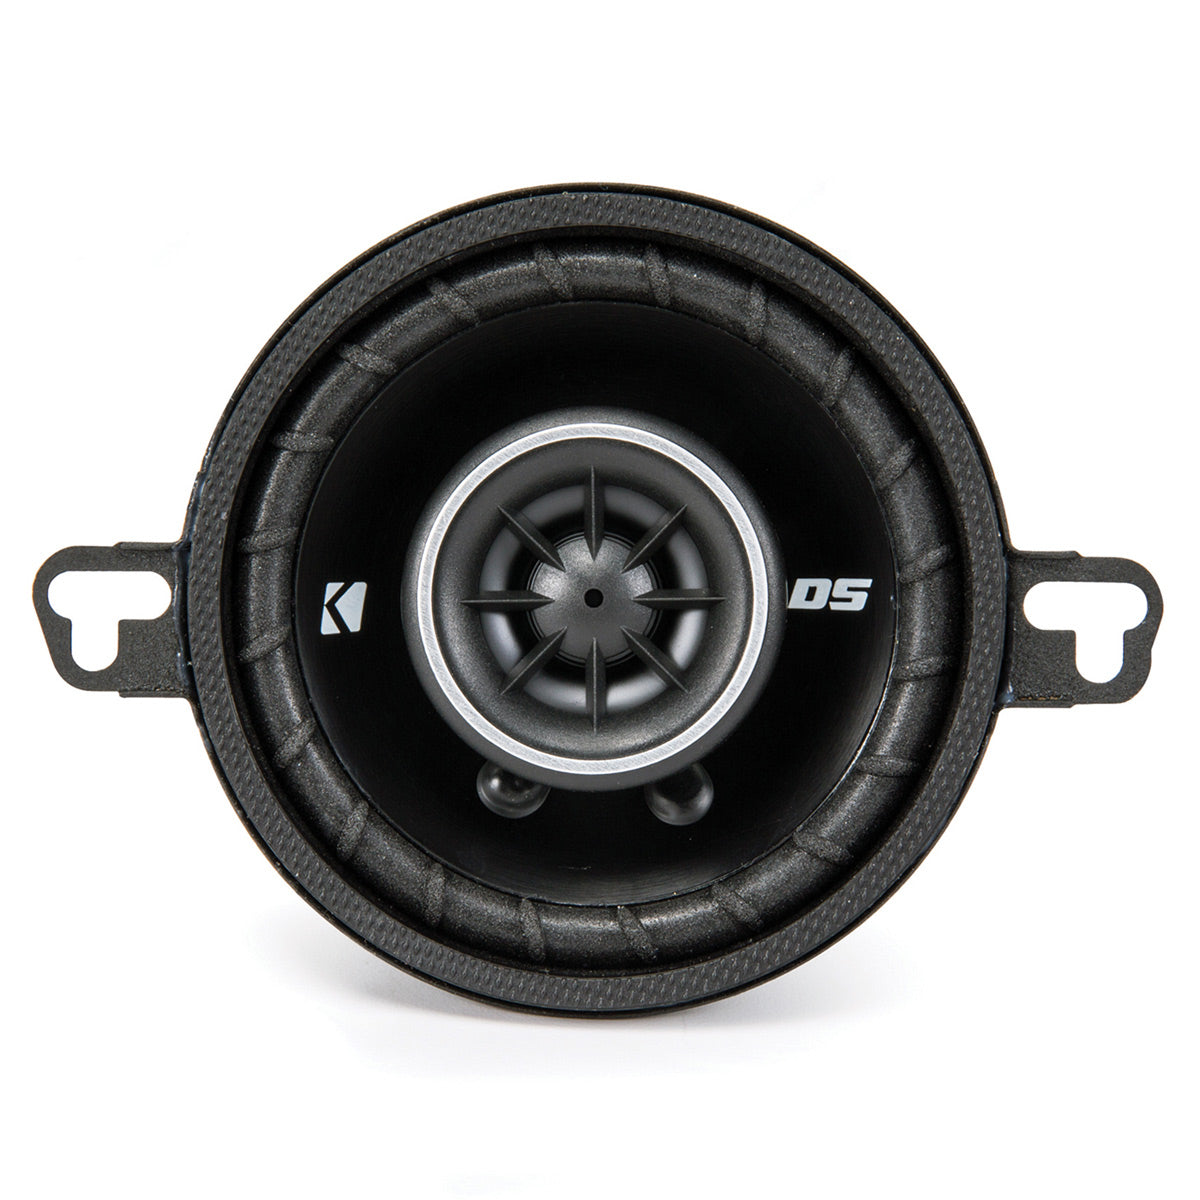 Kicker DSC350 DS Series 3.5" 4-Ohm Coaxial Speaker